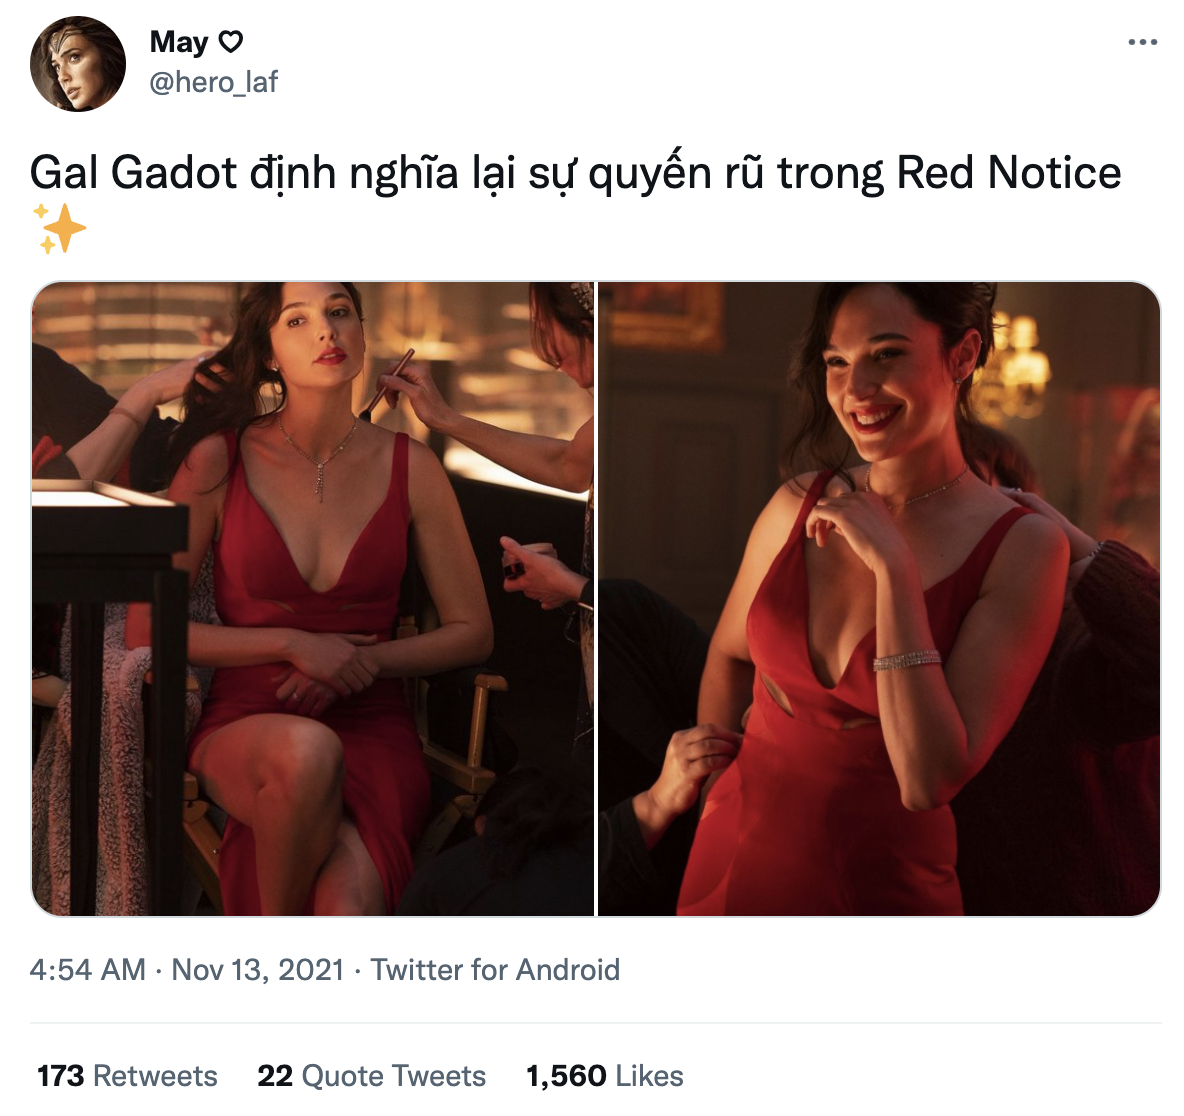 Chùm ảnh Gal Gadot đẹp như nữ thần trong phim mới làm netizen đổ rạp: Ánh mắt gợi đòn hết mức, sexy ăn đứt thời Wonder Woman! - Ảnh 7.